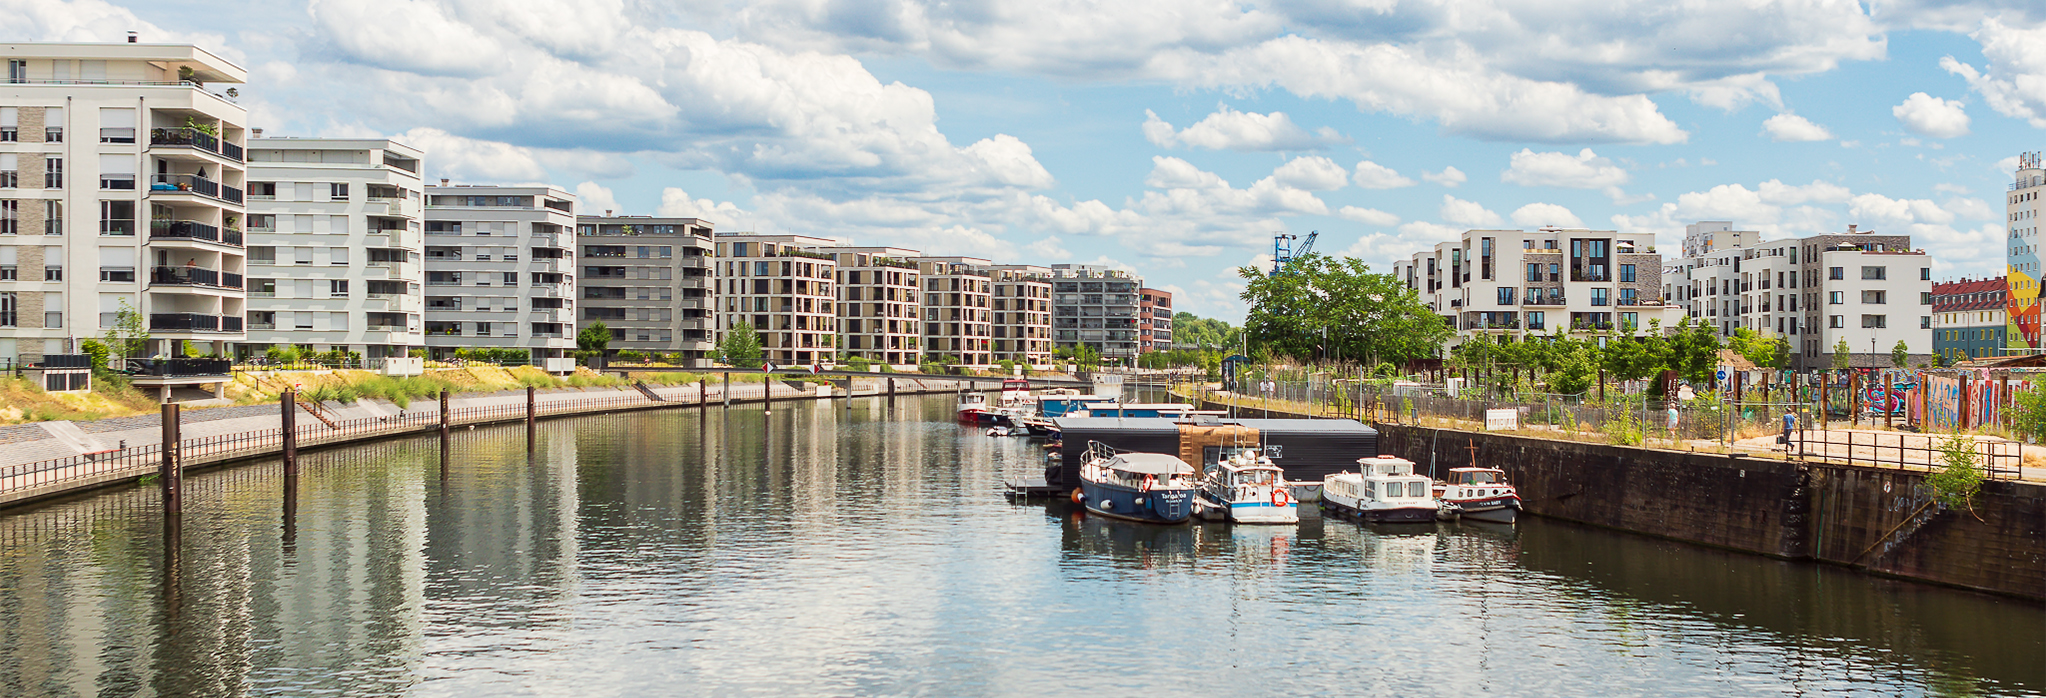 Moderne Architektur und Boote am Offenbacher Hafen